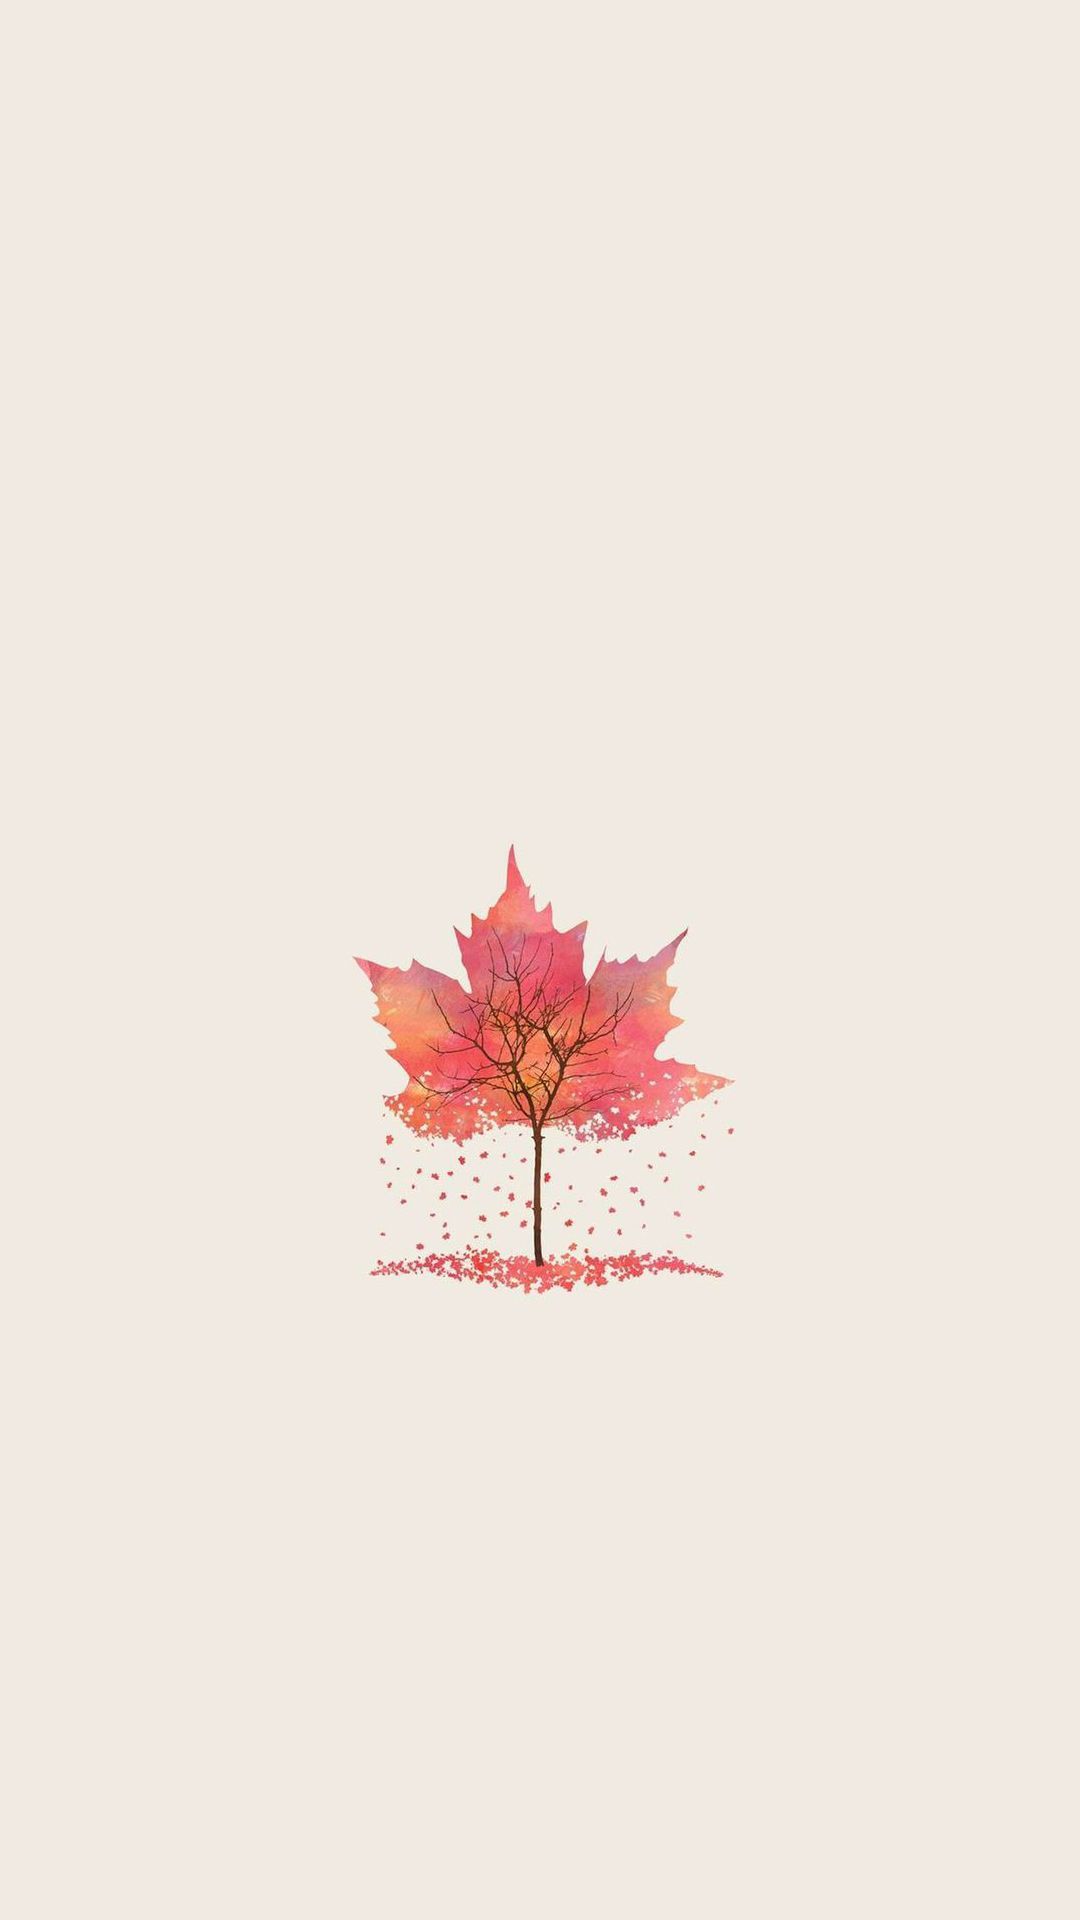 Autumn Tree Leaf Shape Illustration iPhone 8 Wallpaper. Leaf illustration, Beautiful nature wallpaper, Autumn leaves wallpaper